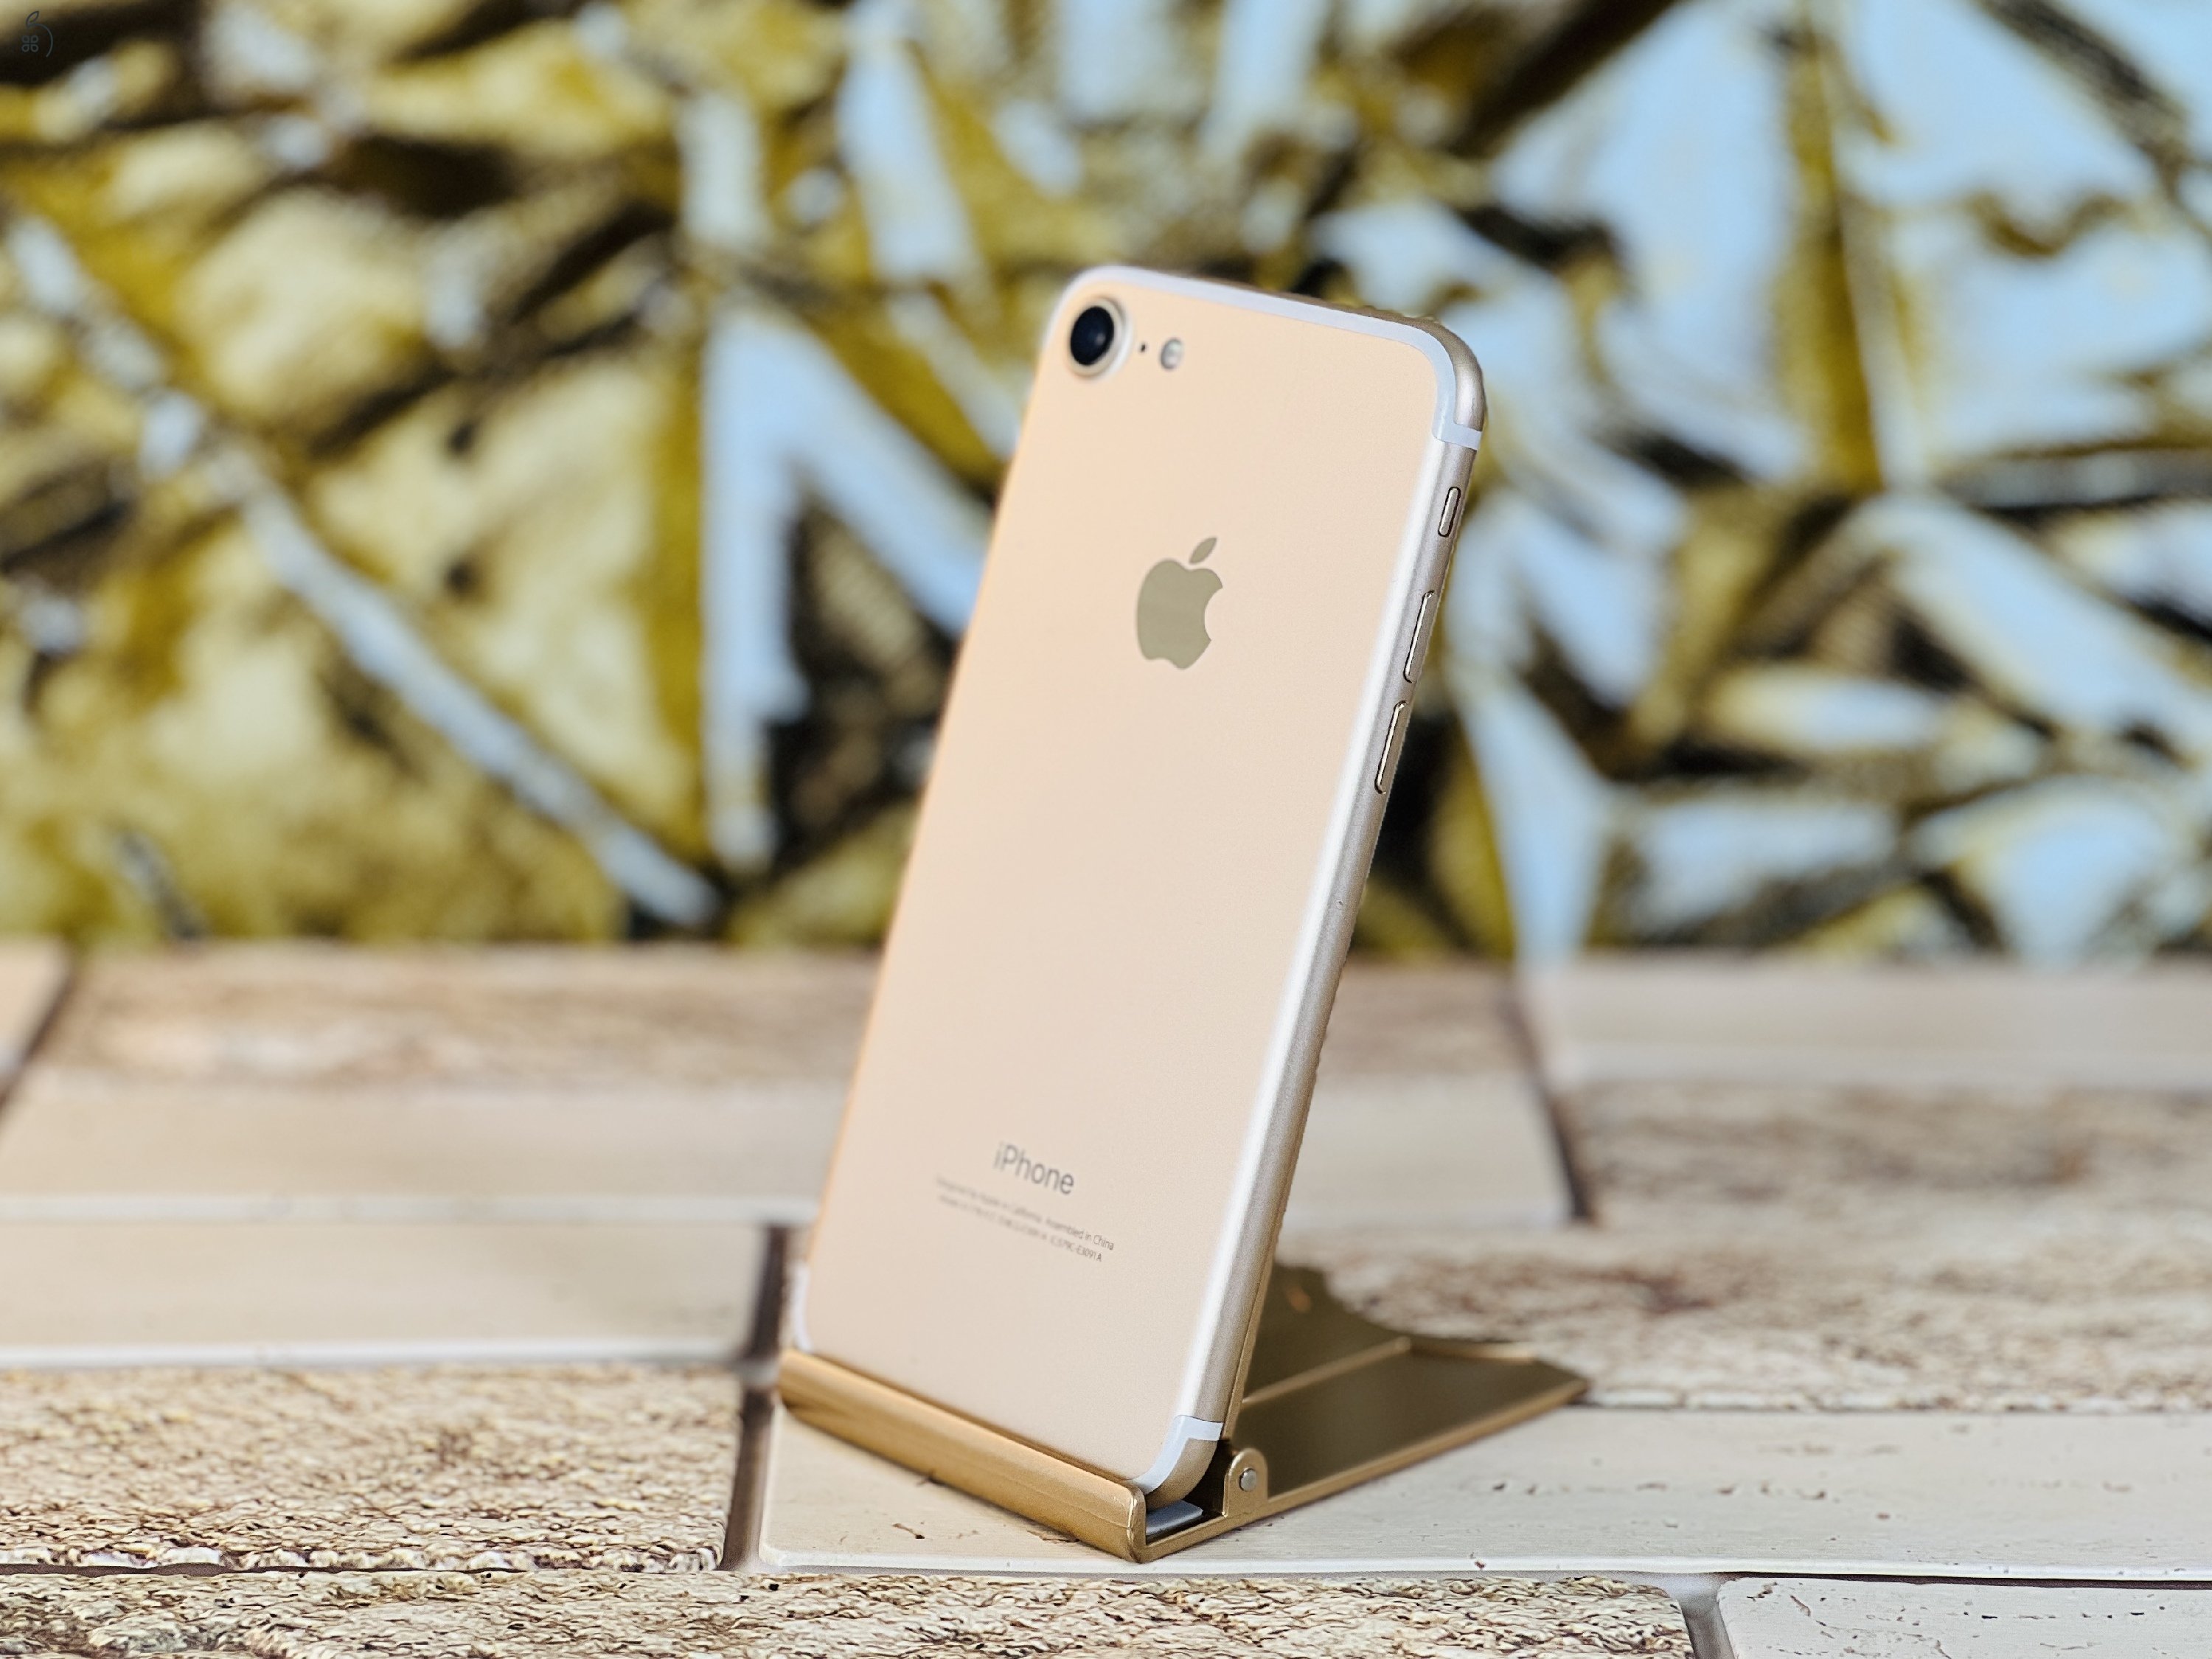 Eladó iPhone 7 32 GB Gold 100% aksi szép állapotú - 12 HÓ GARANCIA - R7881